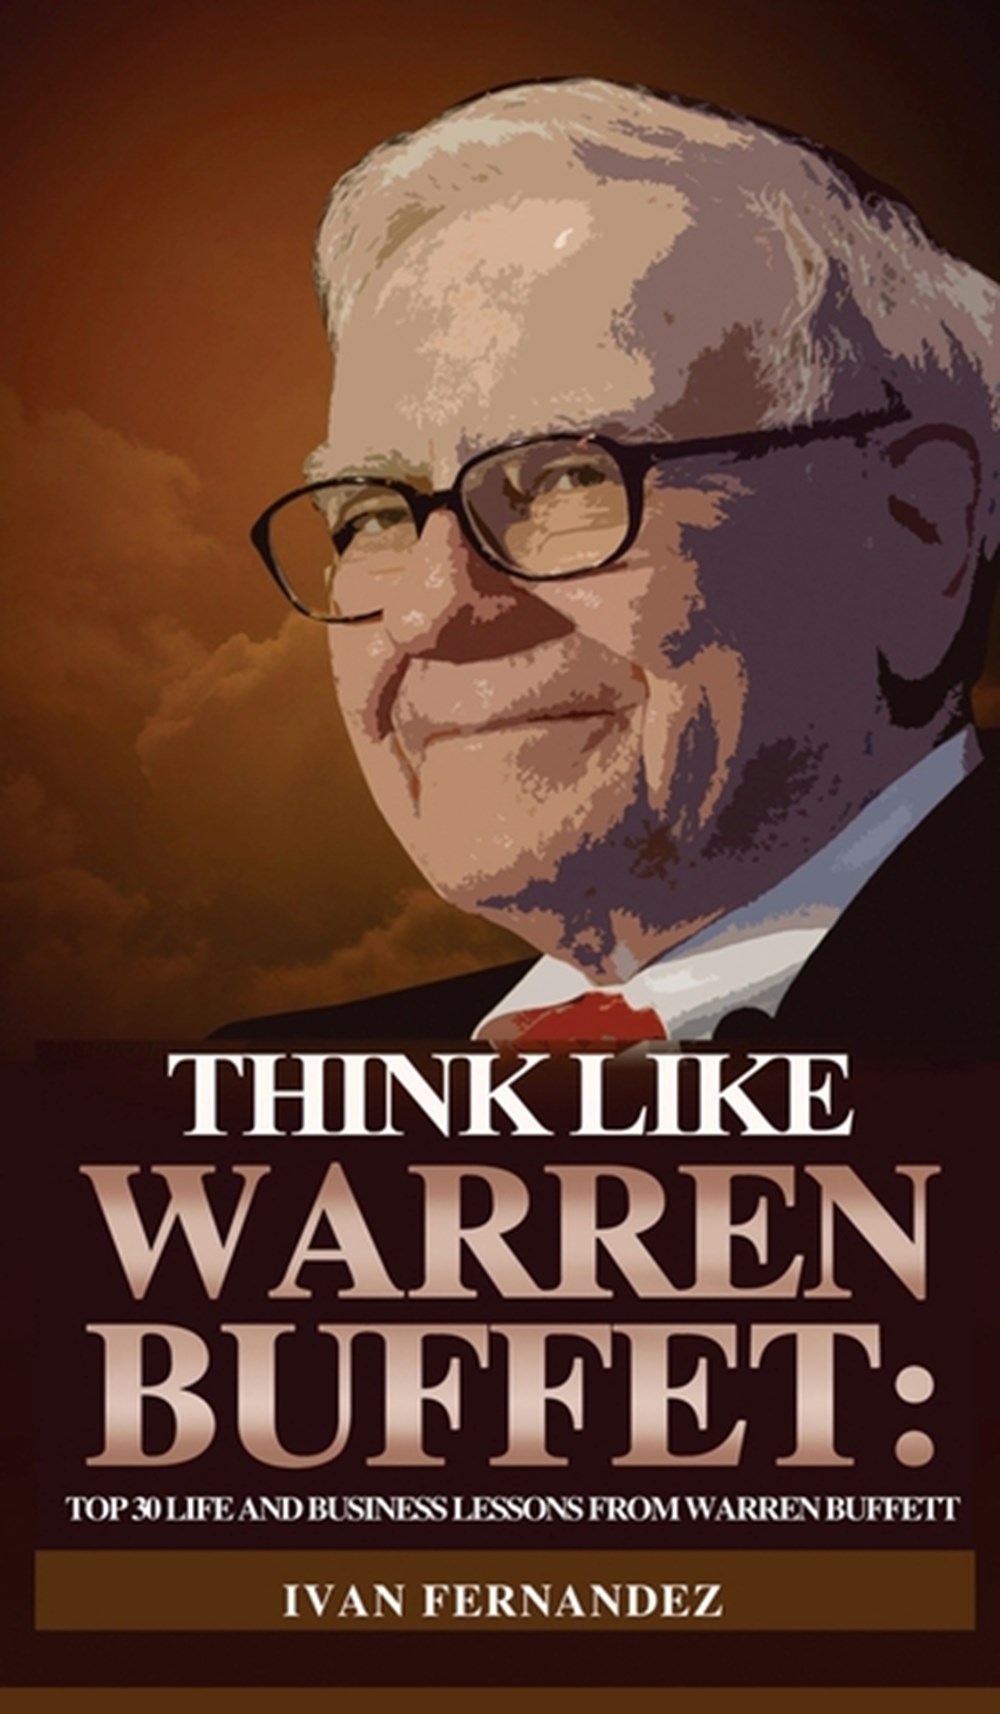 Think Like Warren Buffett Top 30 Life and Business Lessons from Warren Buffett